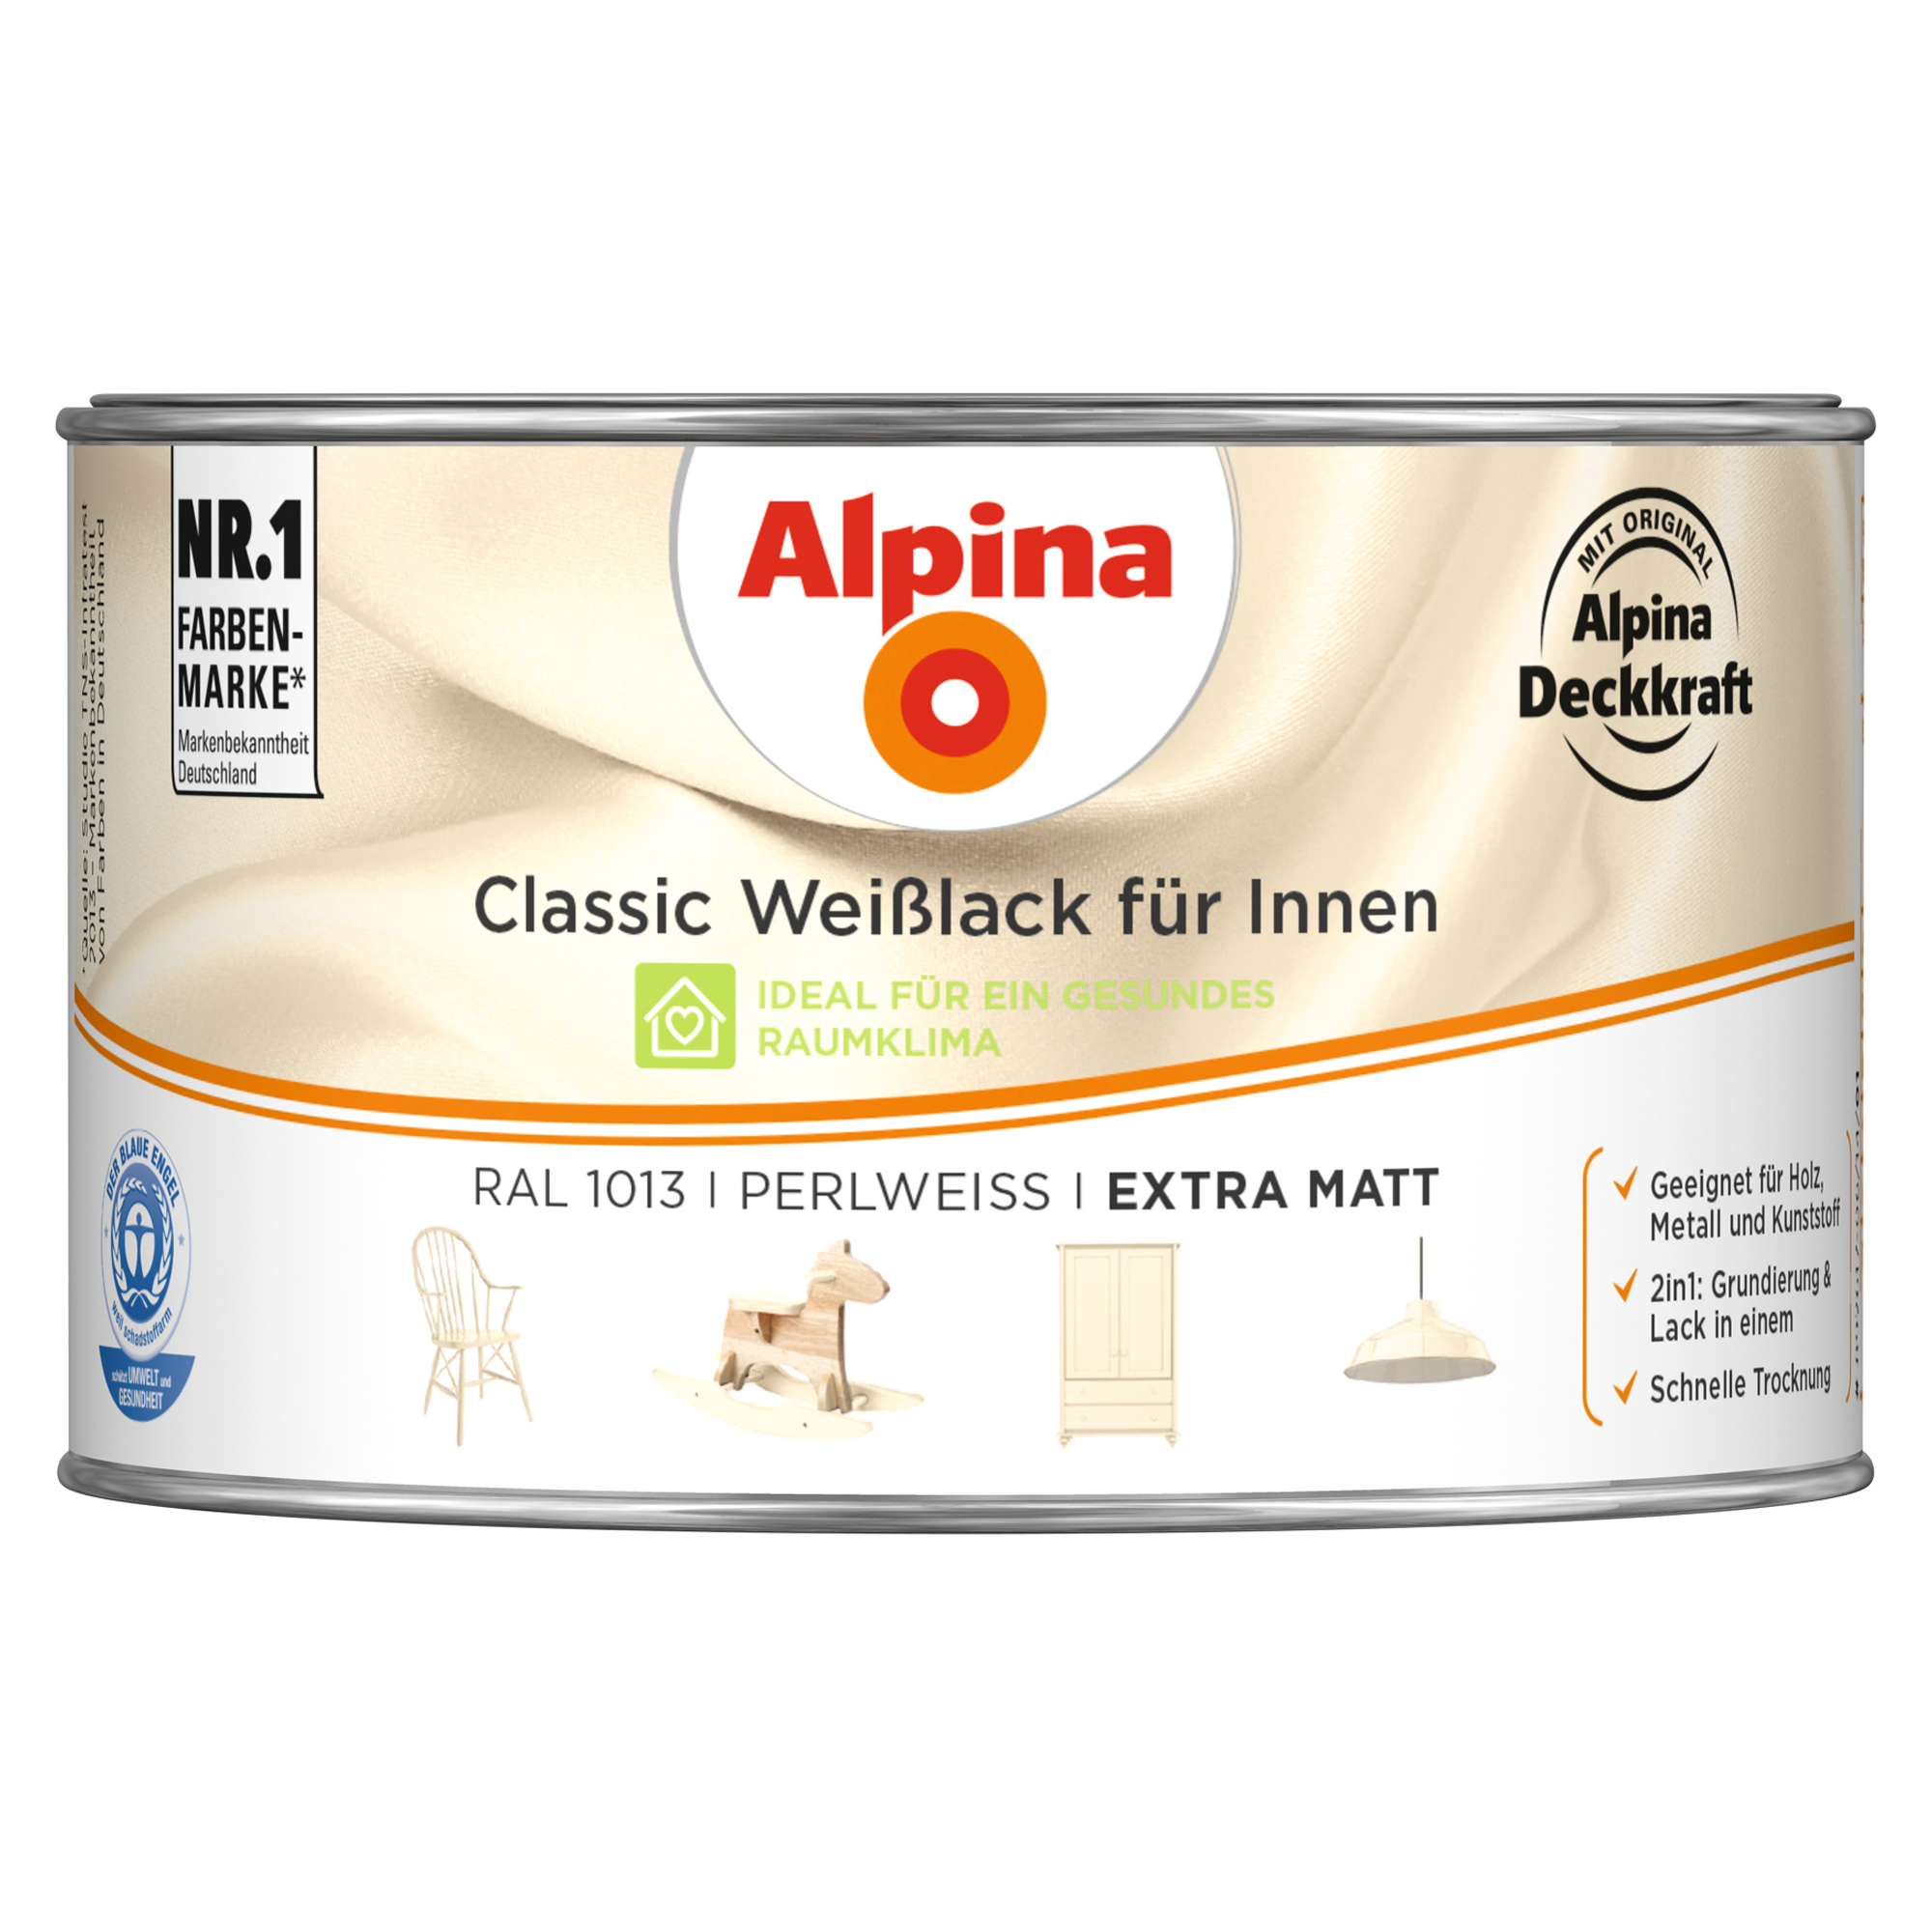 Weißlack für Innen perlweiß extramatt 300 ml + product picture